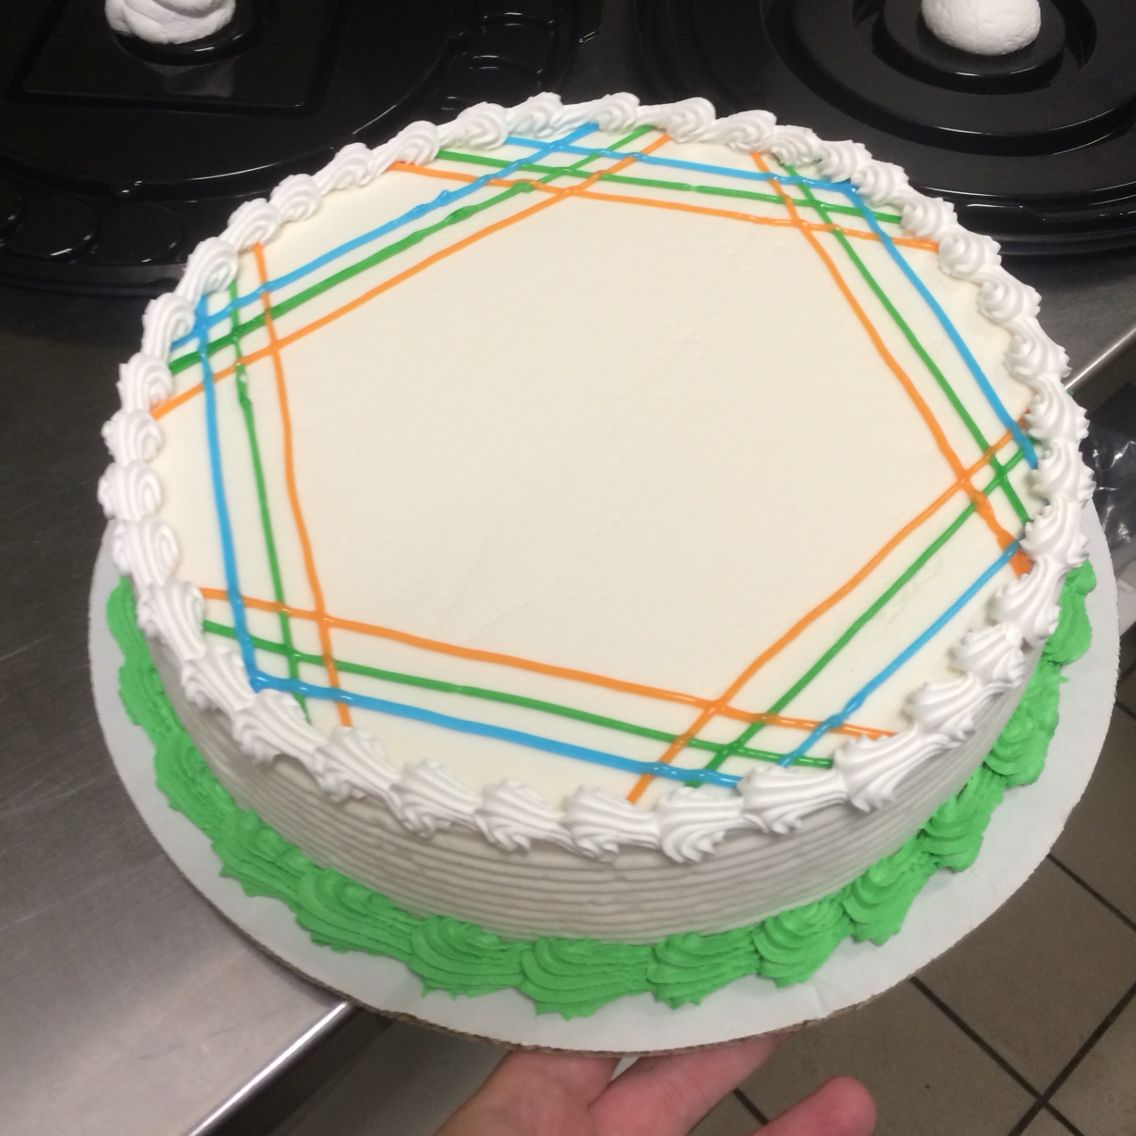 DQ cake design hexagon look